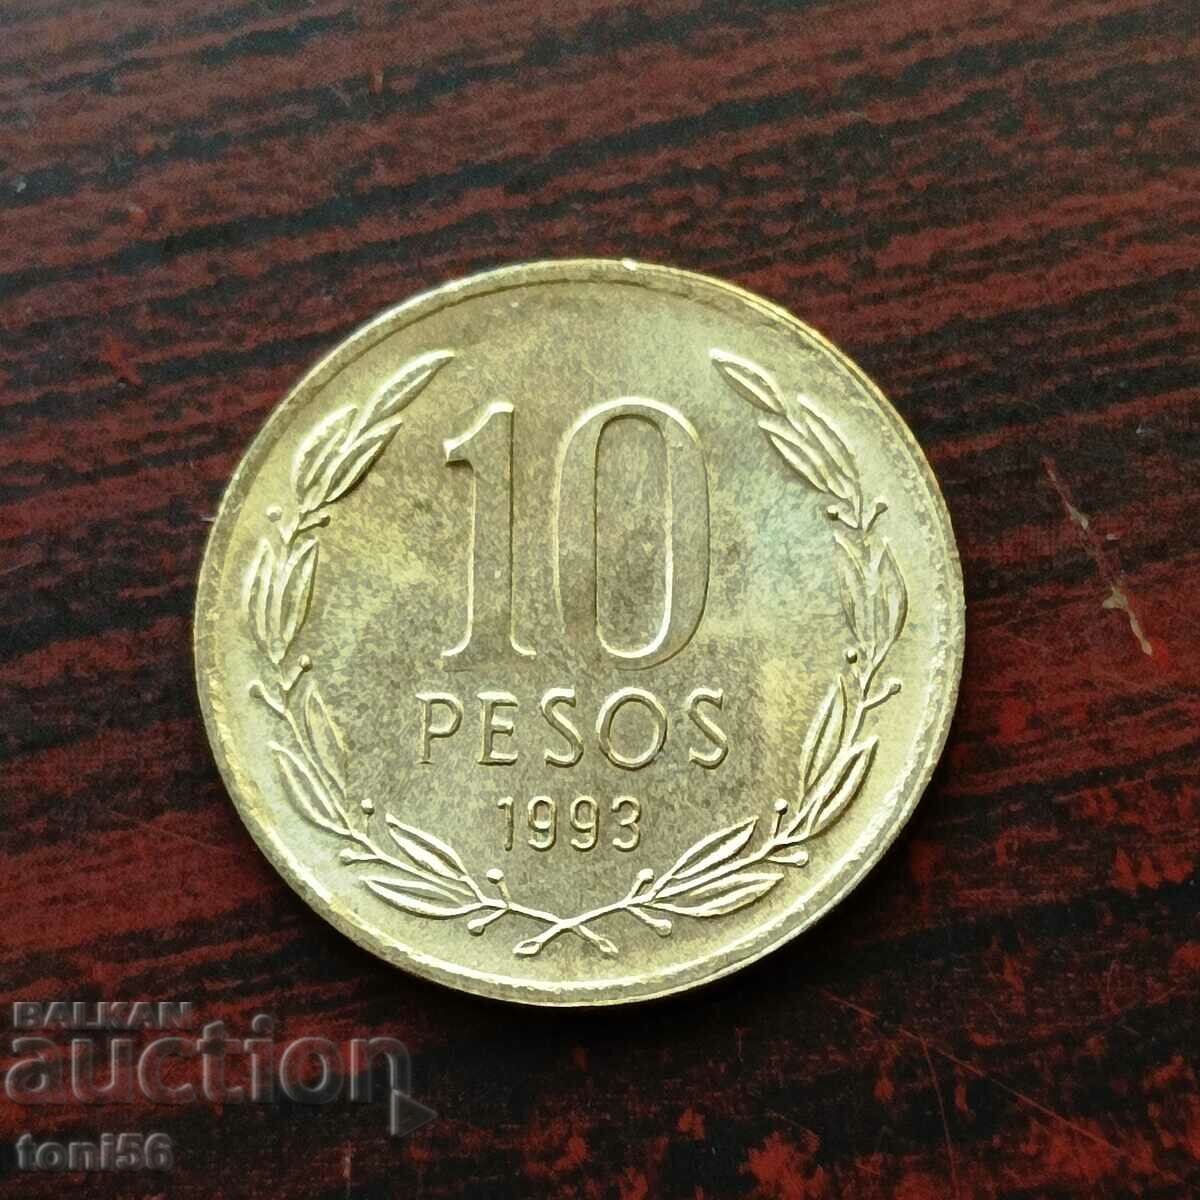 Χιλή 10 πέσος 1993 UNC - βλέπε περιγραφή